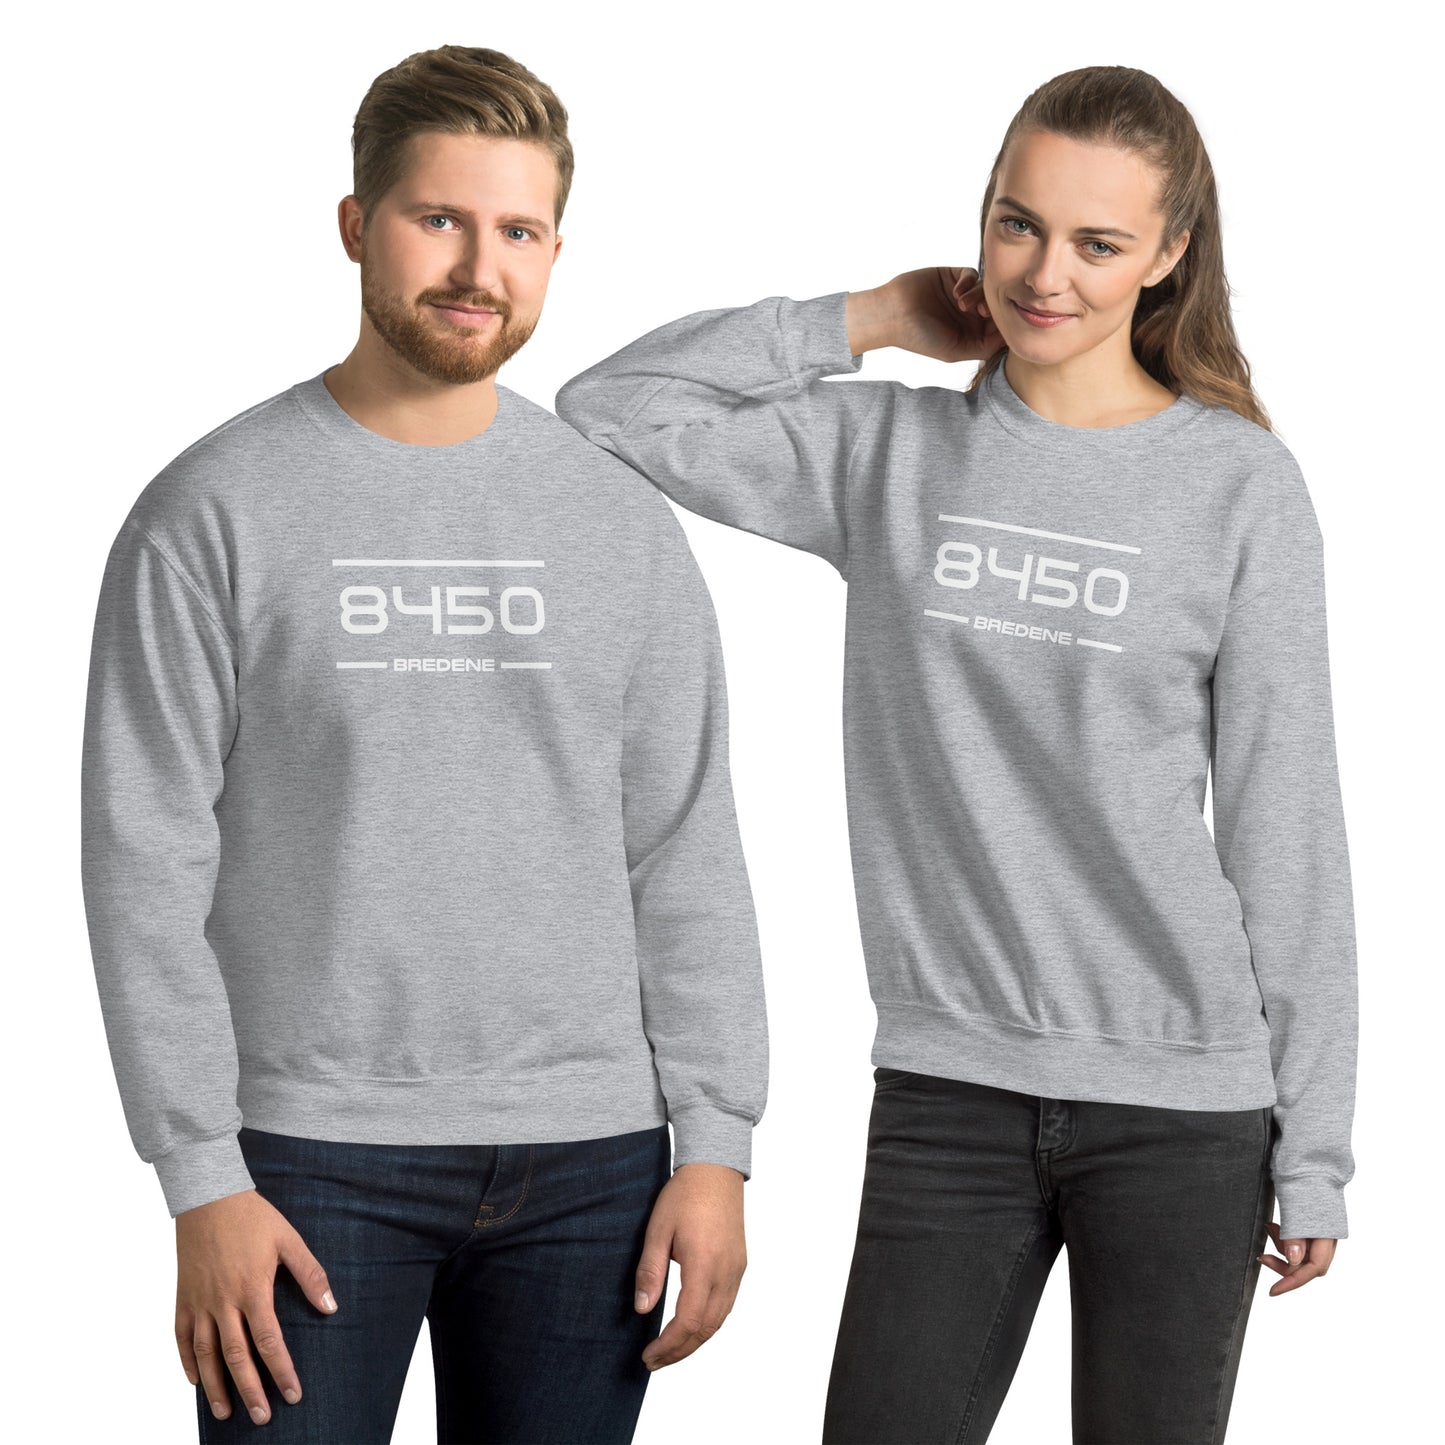 Sweater - 8450 - Bredene (M/V)